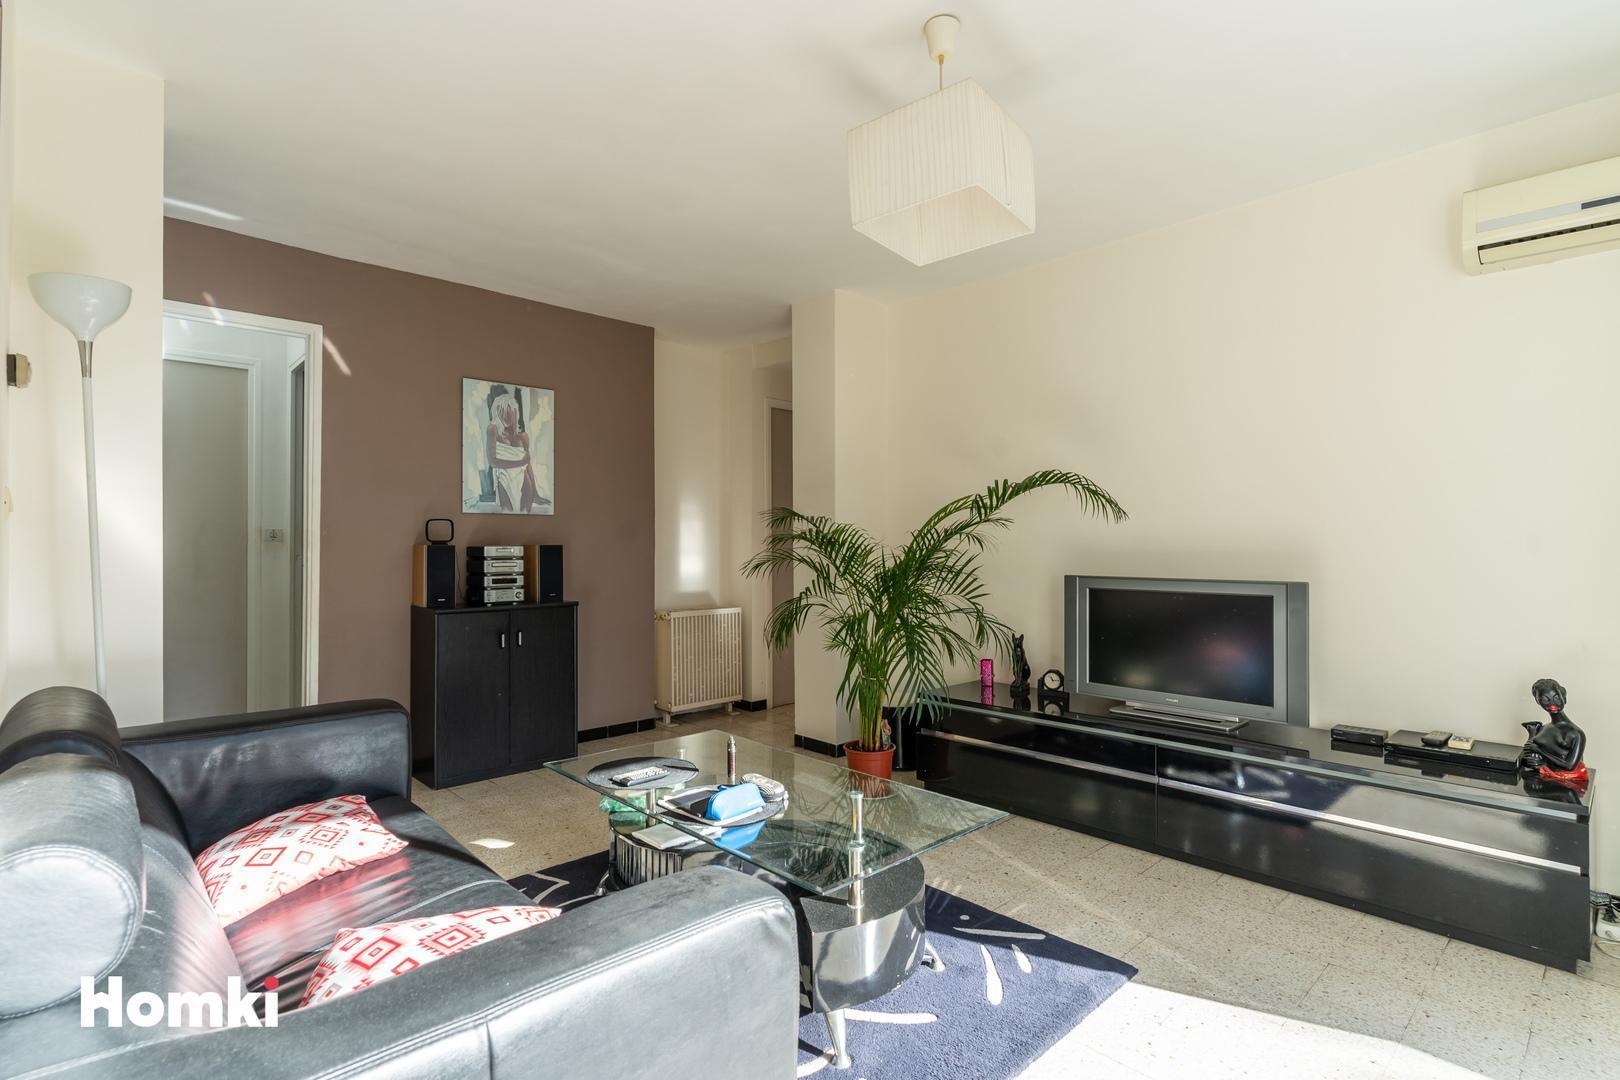 Homki - Vente Appartement  de 65.0 m² à Marseille 13009